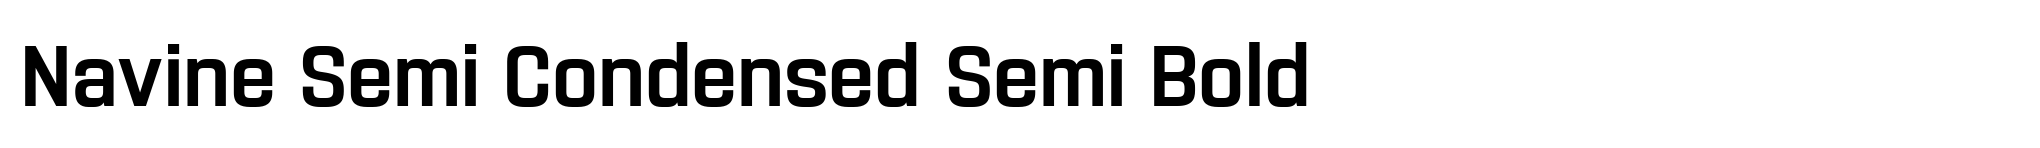 Navine Semi Condensed Semi Bold image